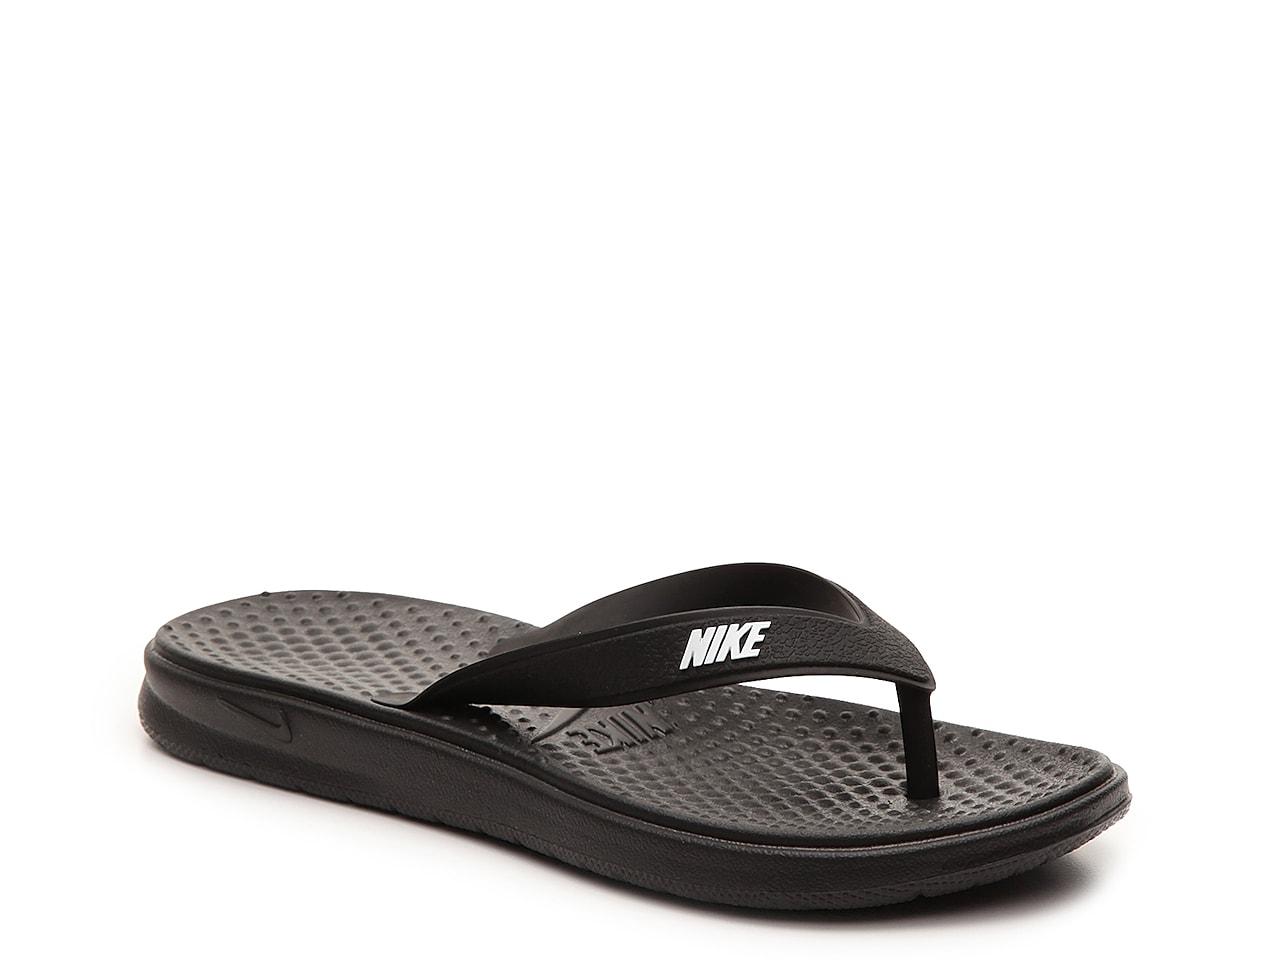 Flip Nike | vlr.eng.br